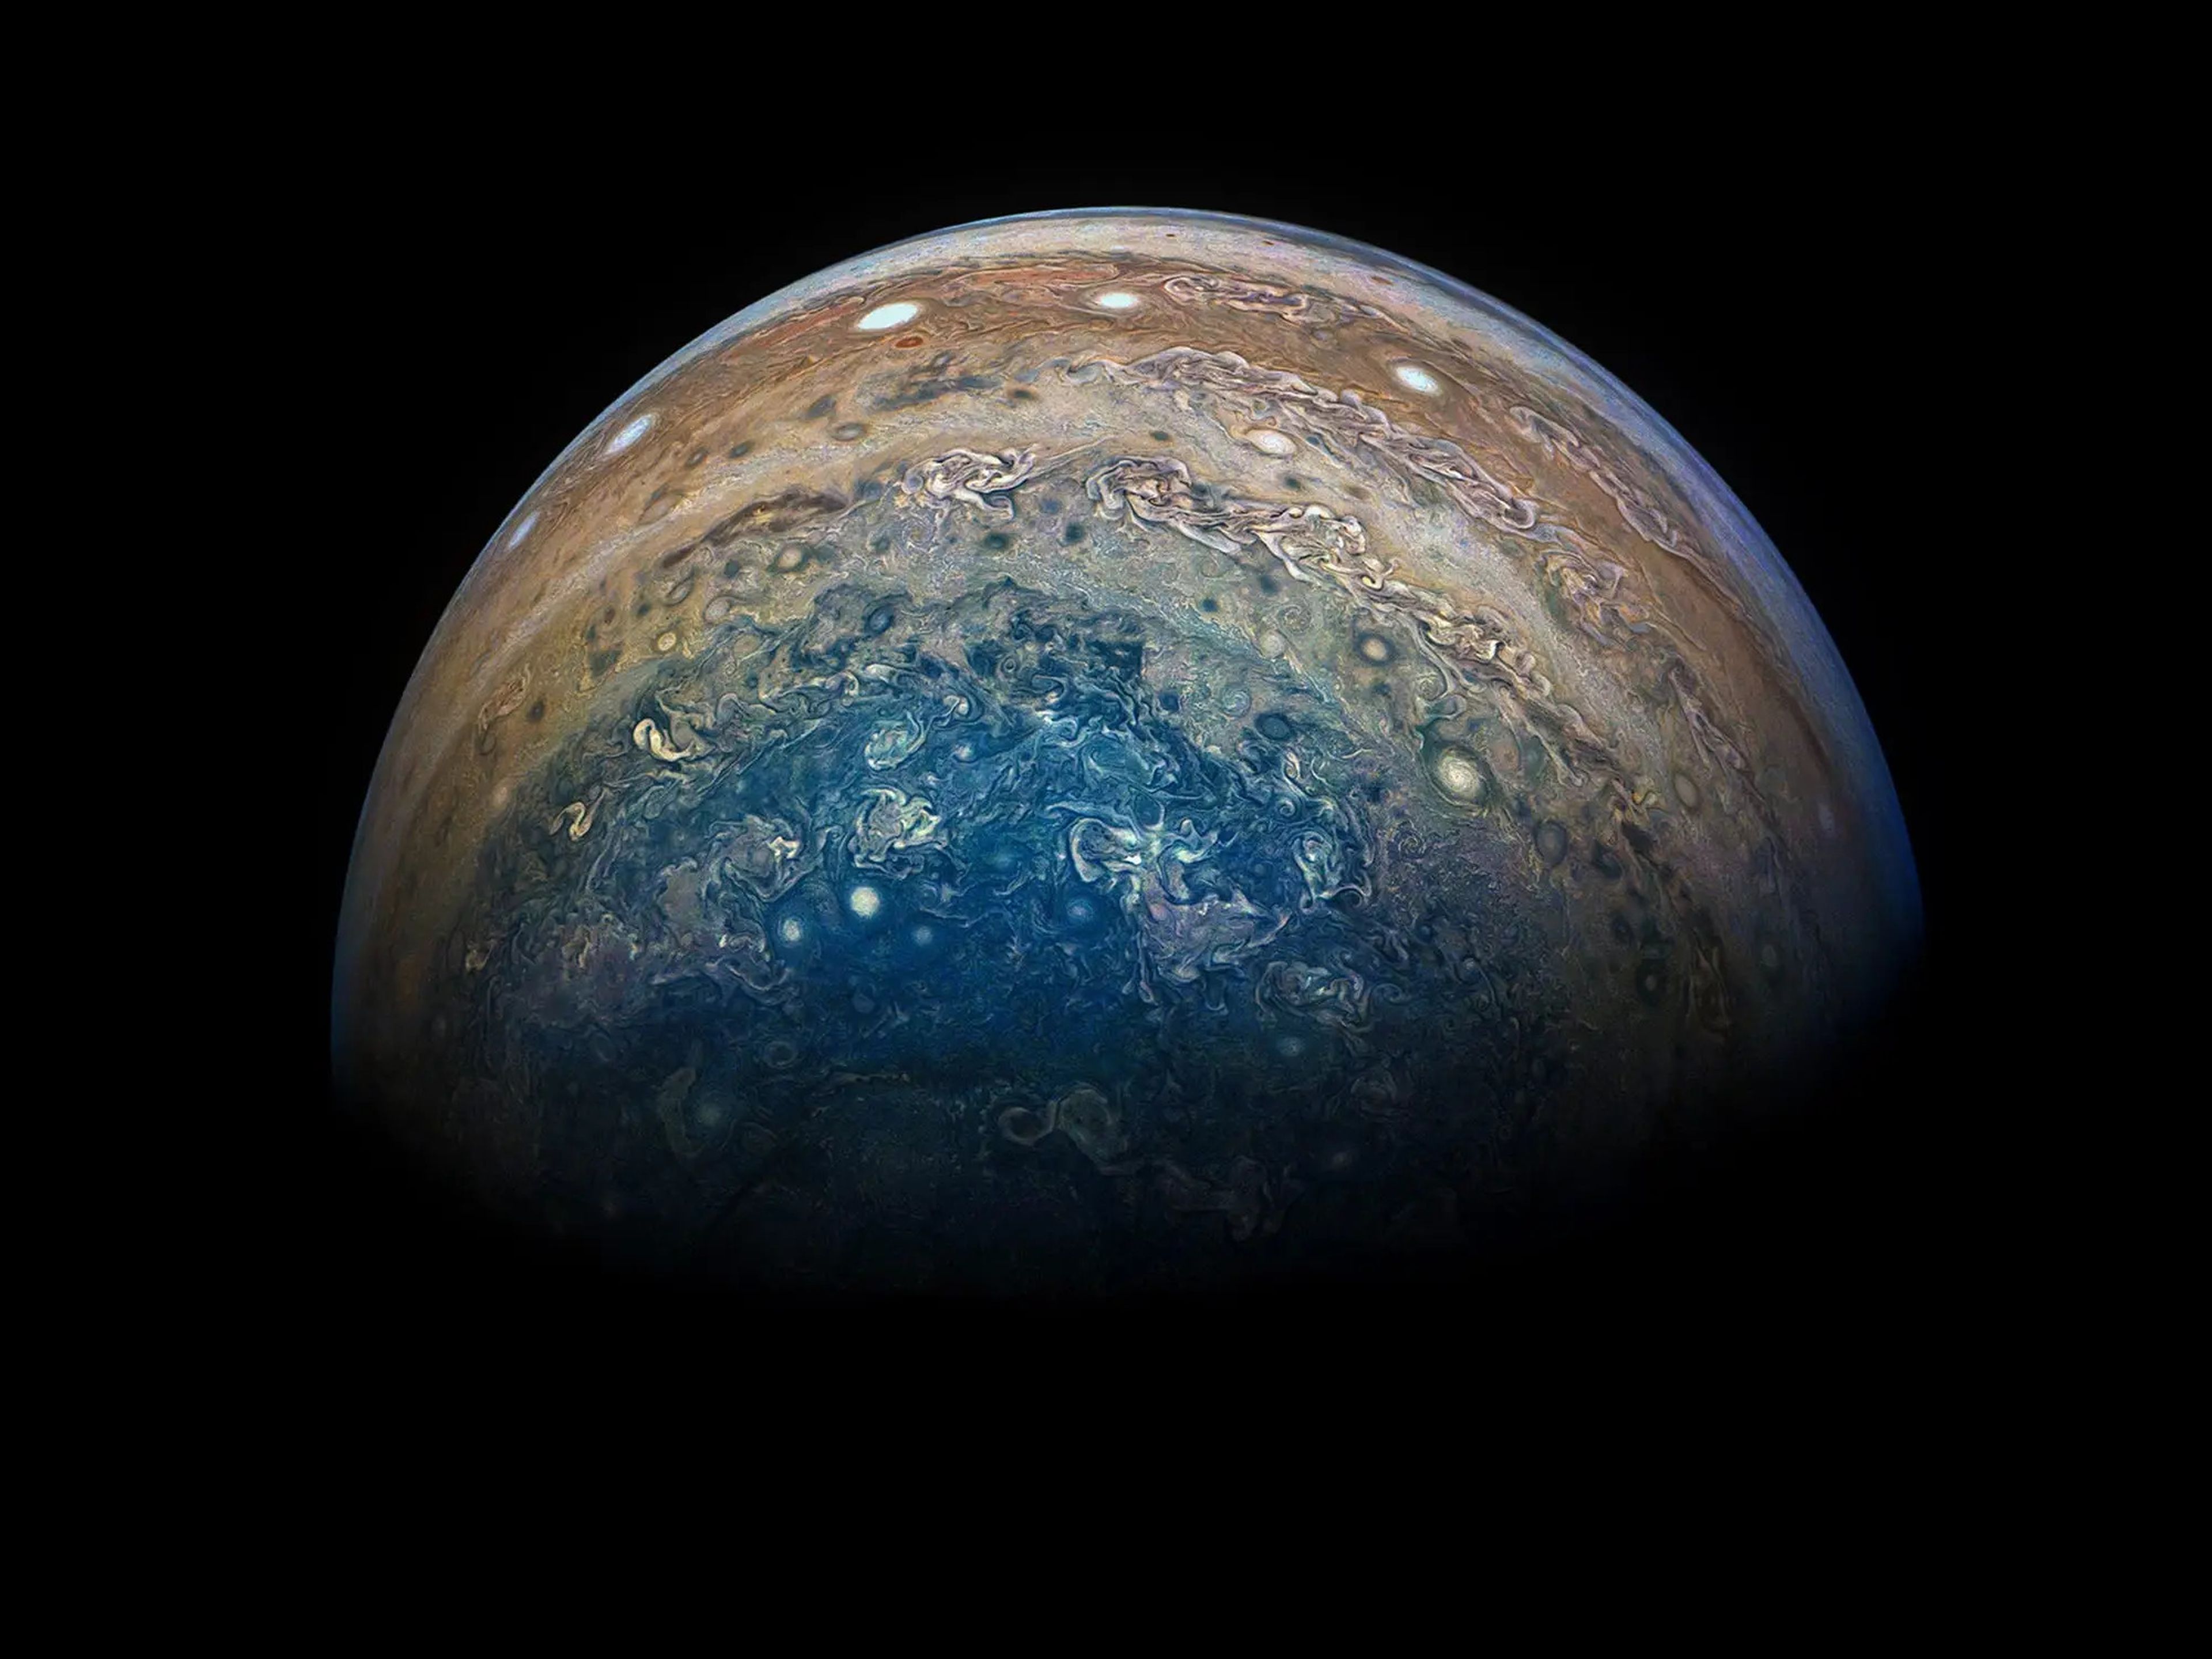 Júpiter visto por la sonda Juno durante su décimo sobrevuelo.